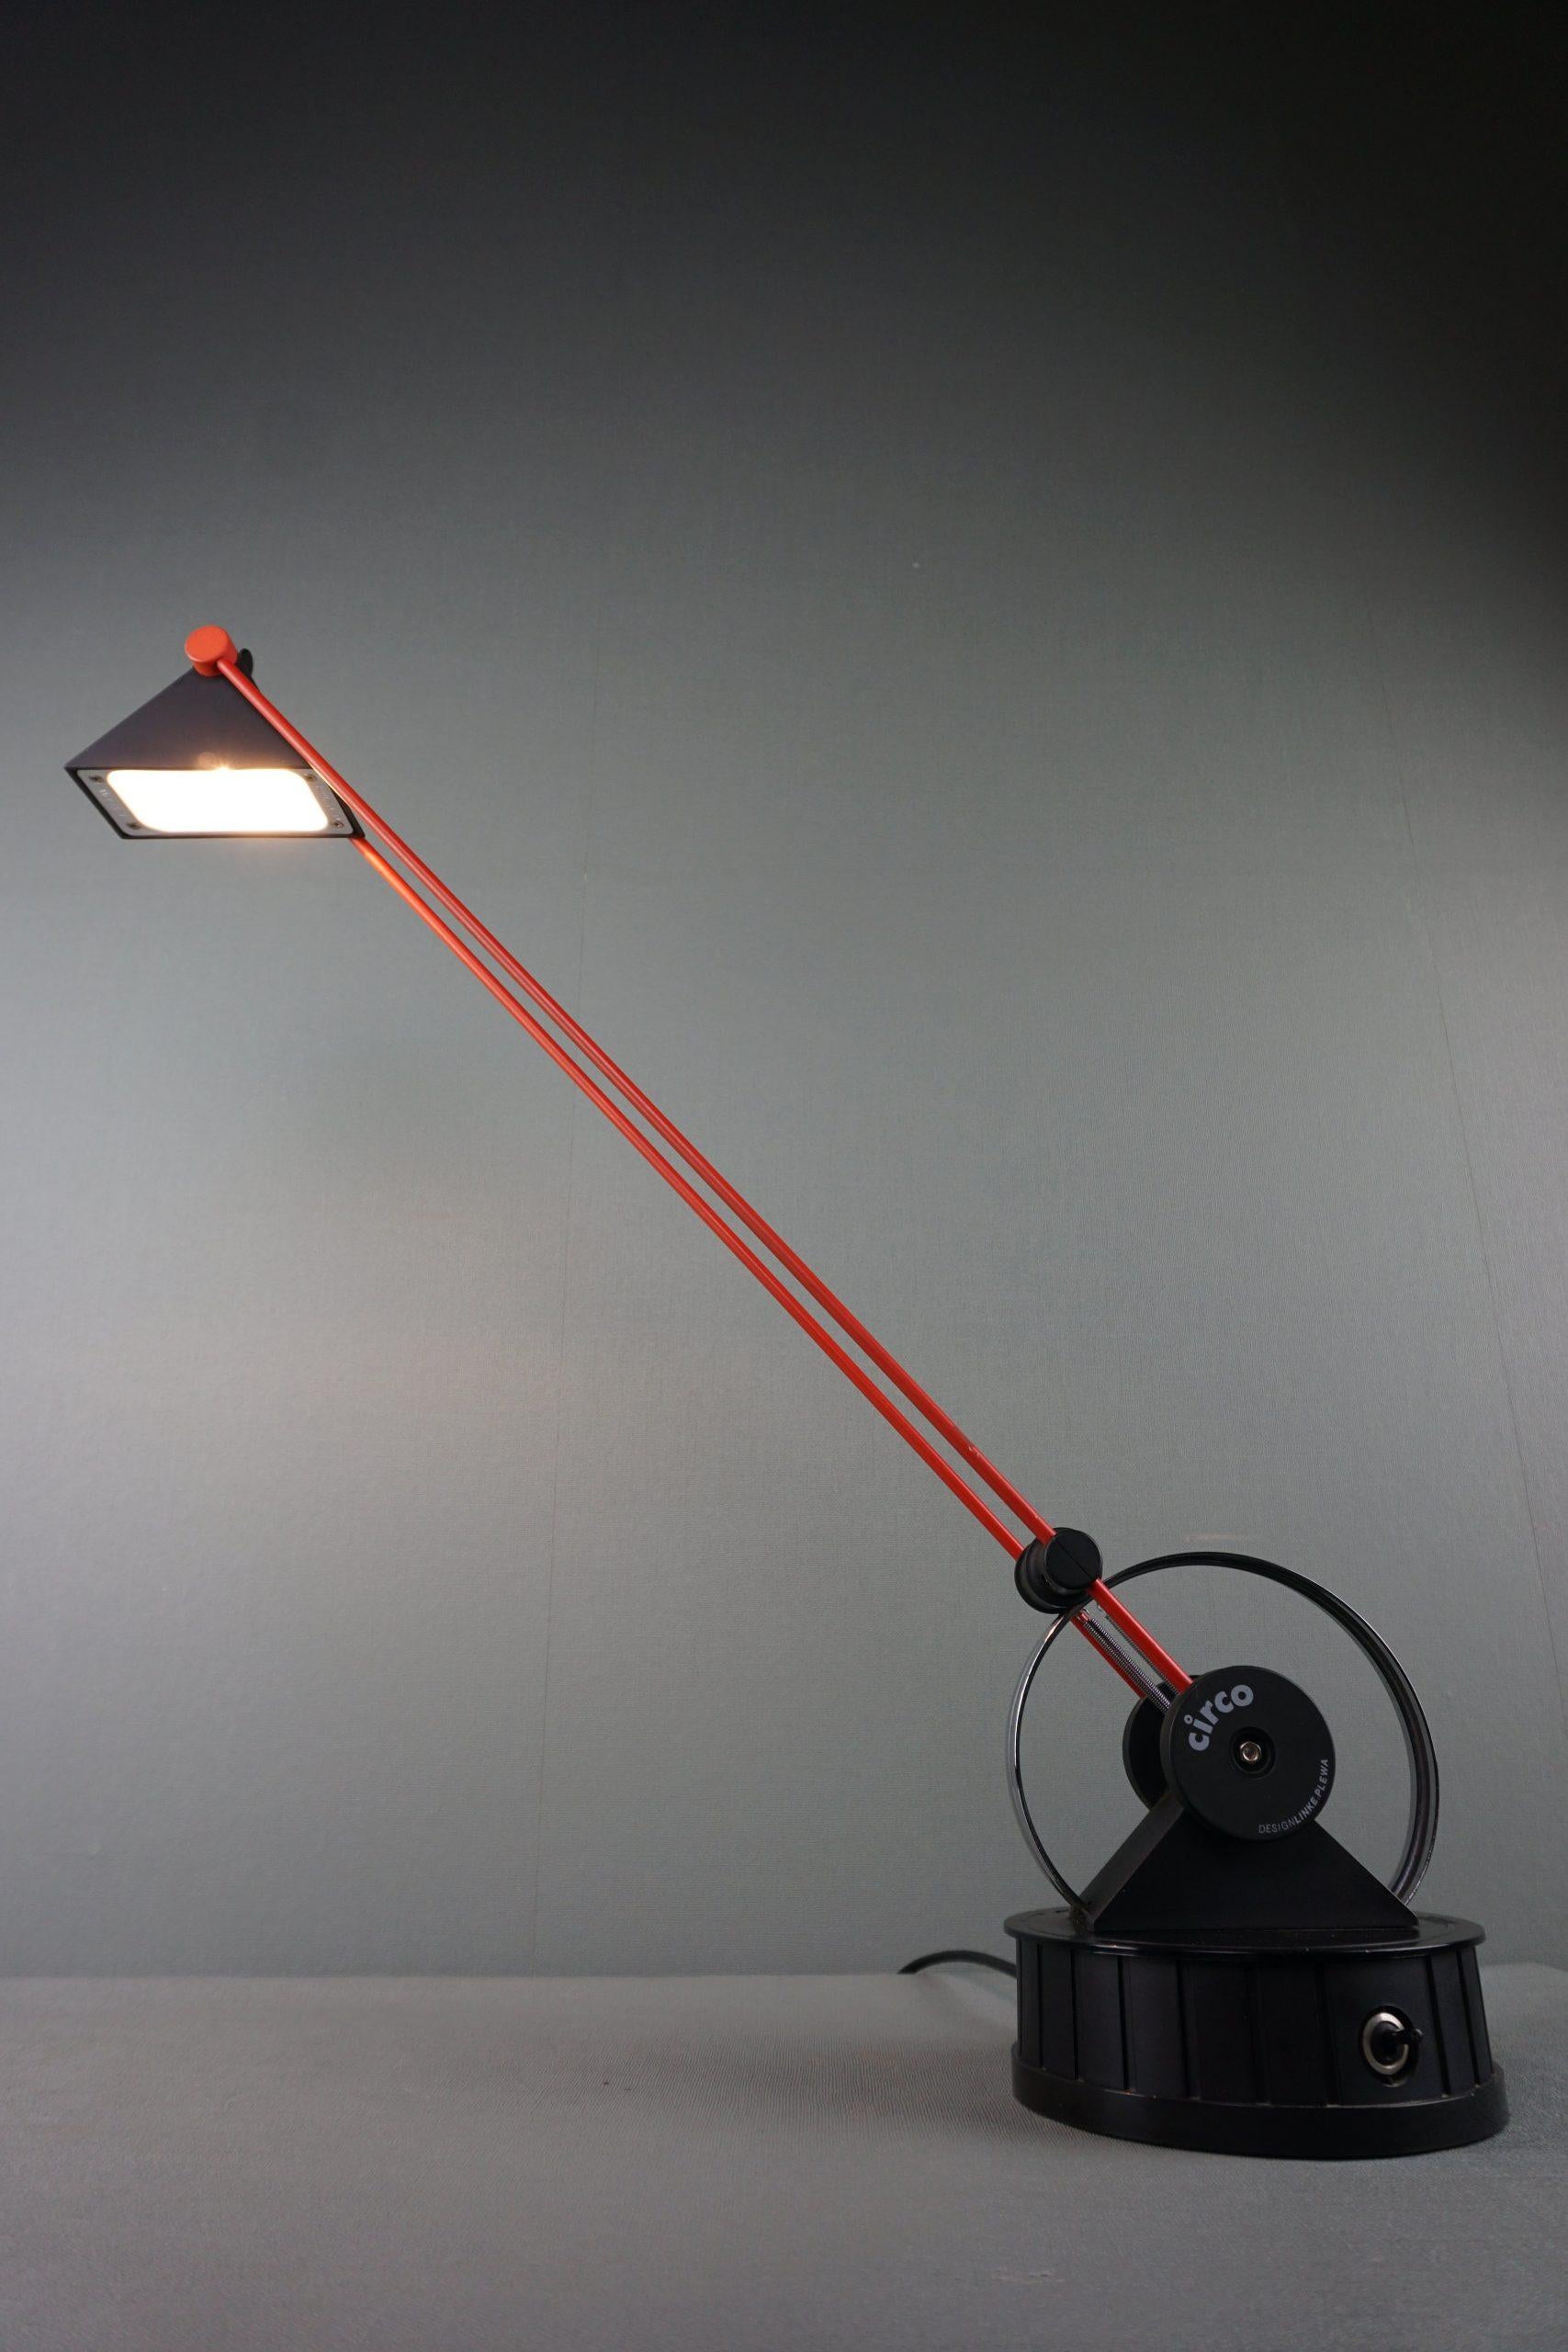 Lampe de bureau postmoderne allemande, conçue par Linke Plewa pour Briljant Leuchten dans les années 1980.

Cette lampe de bureau est fabriquée en métal recouvert de plastique rouge, en aluminium peint en noir, en métal chromé et en plastique